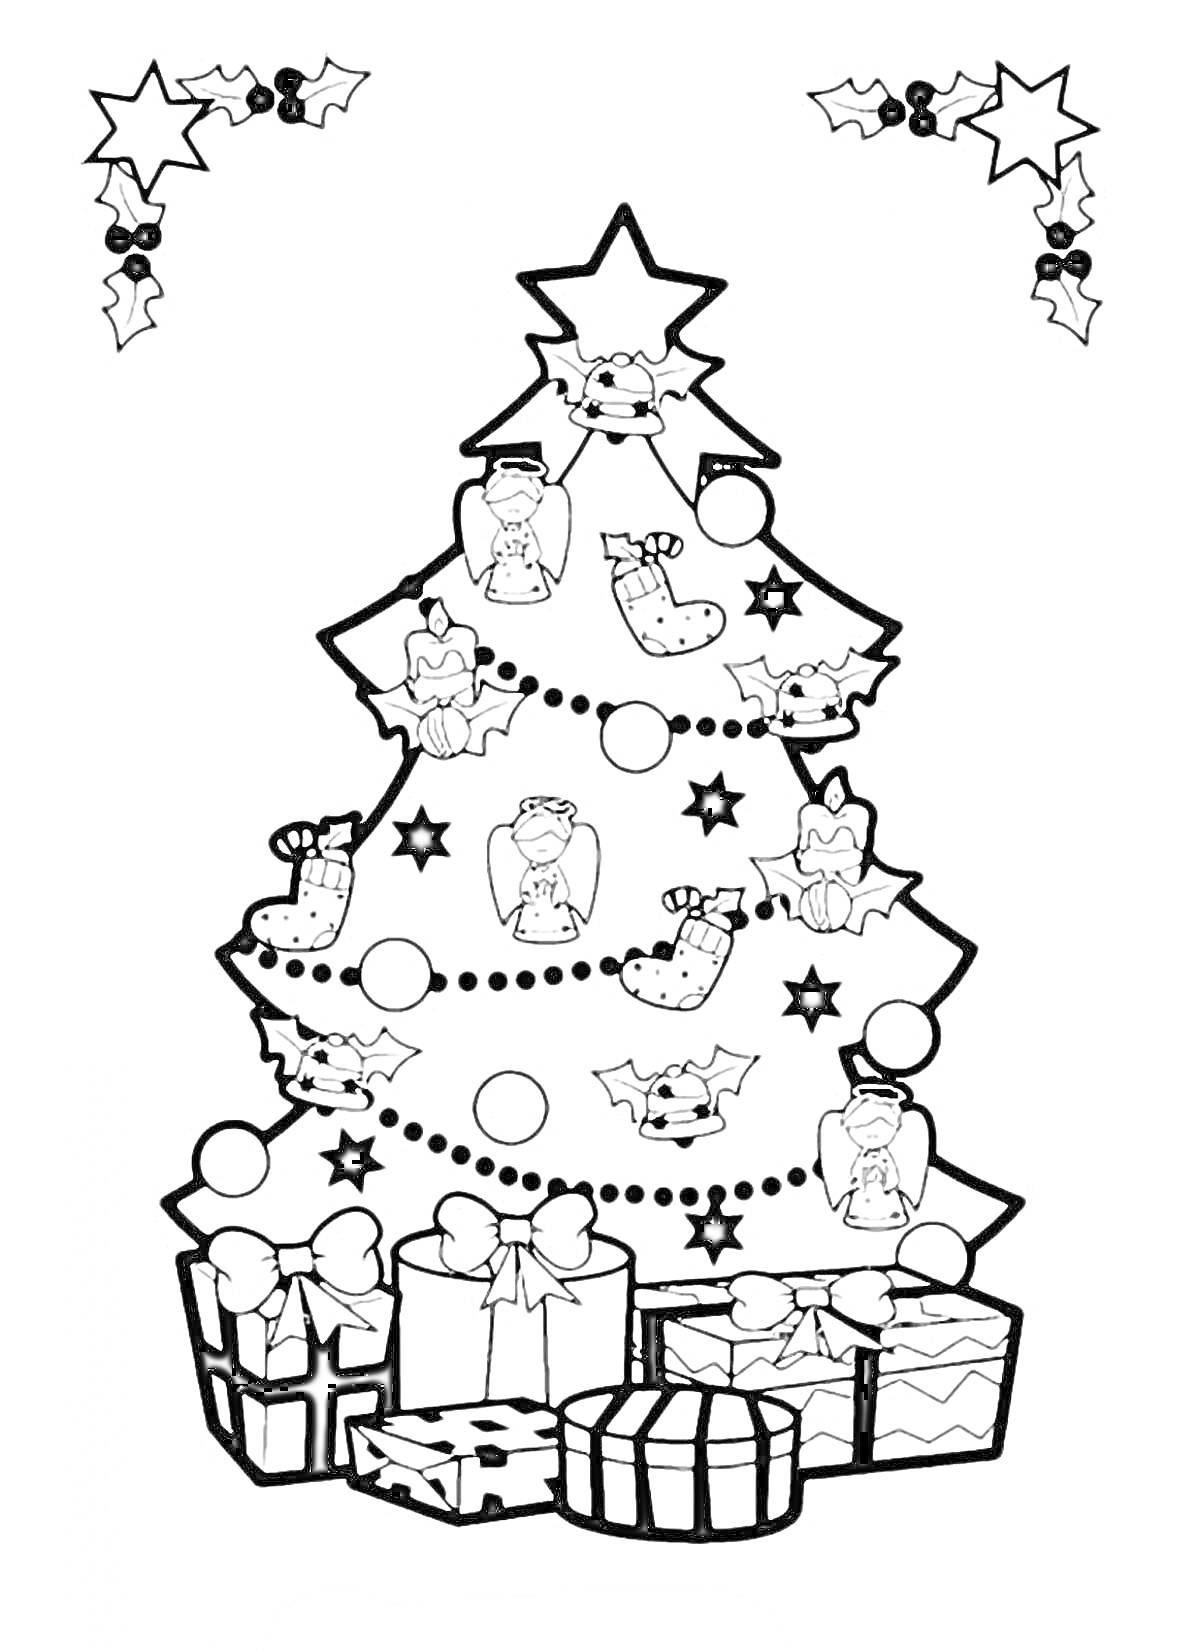 Раскраска Новогодняя елка с игрушками, звездами, украшениями и подарками